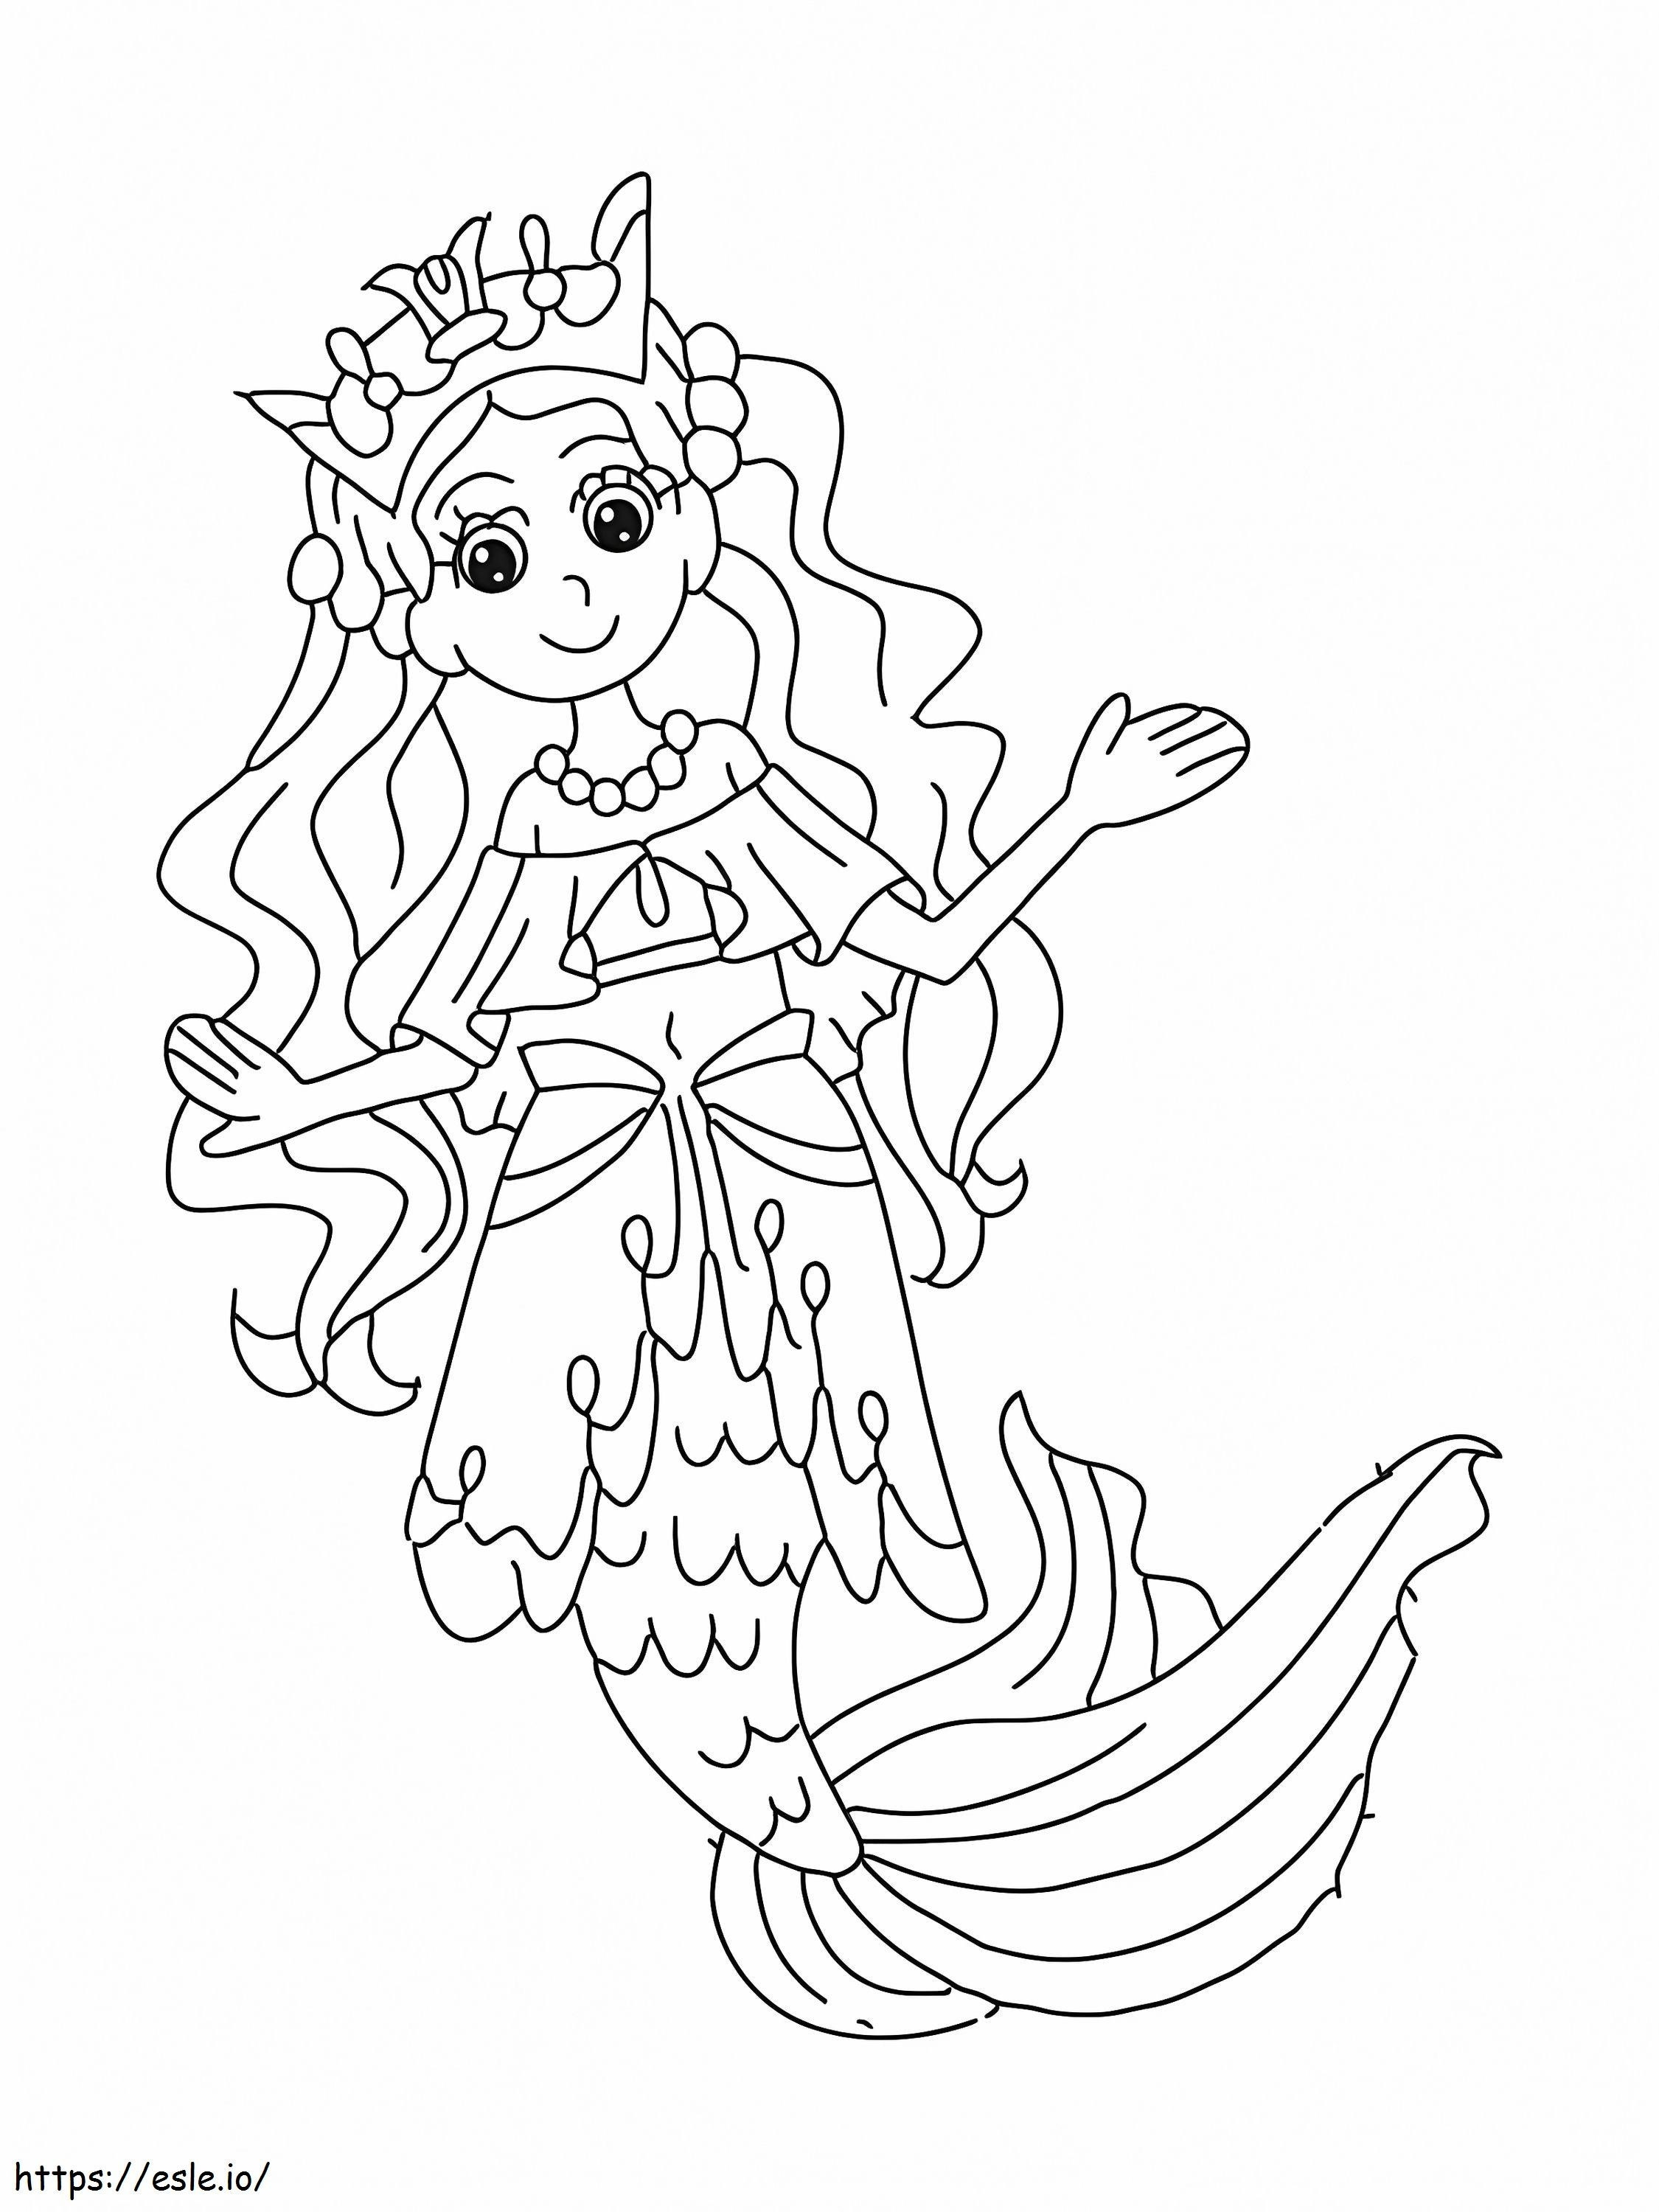 La regina della bellezza Sirena da colorare